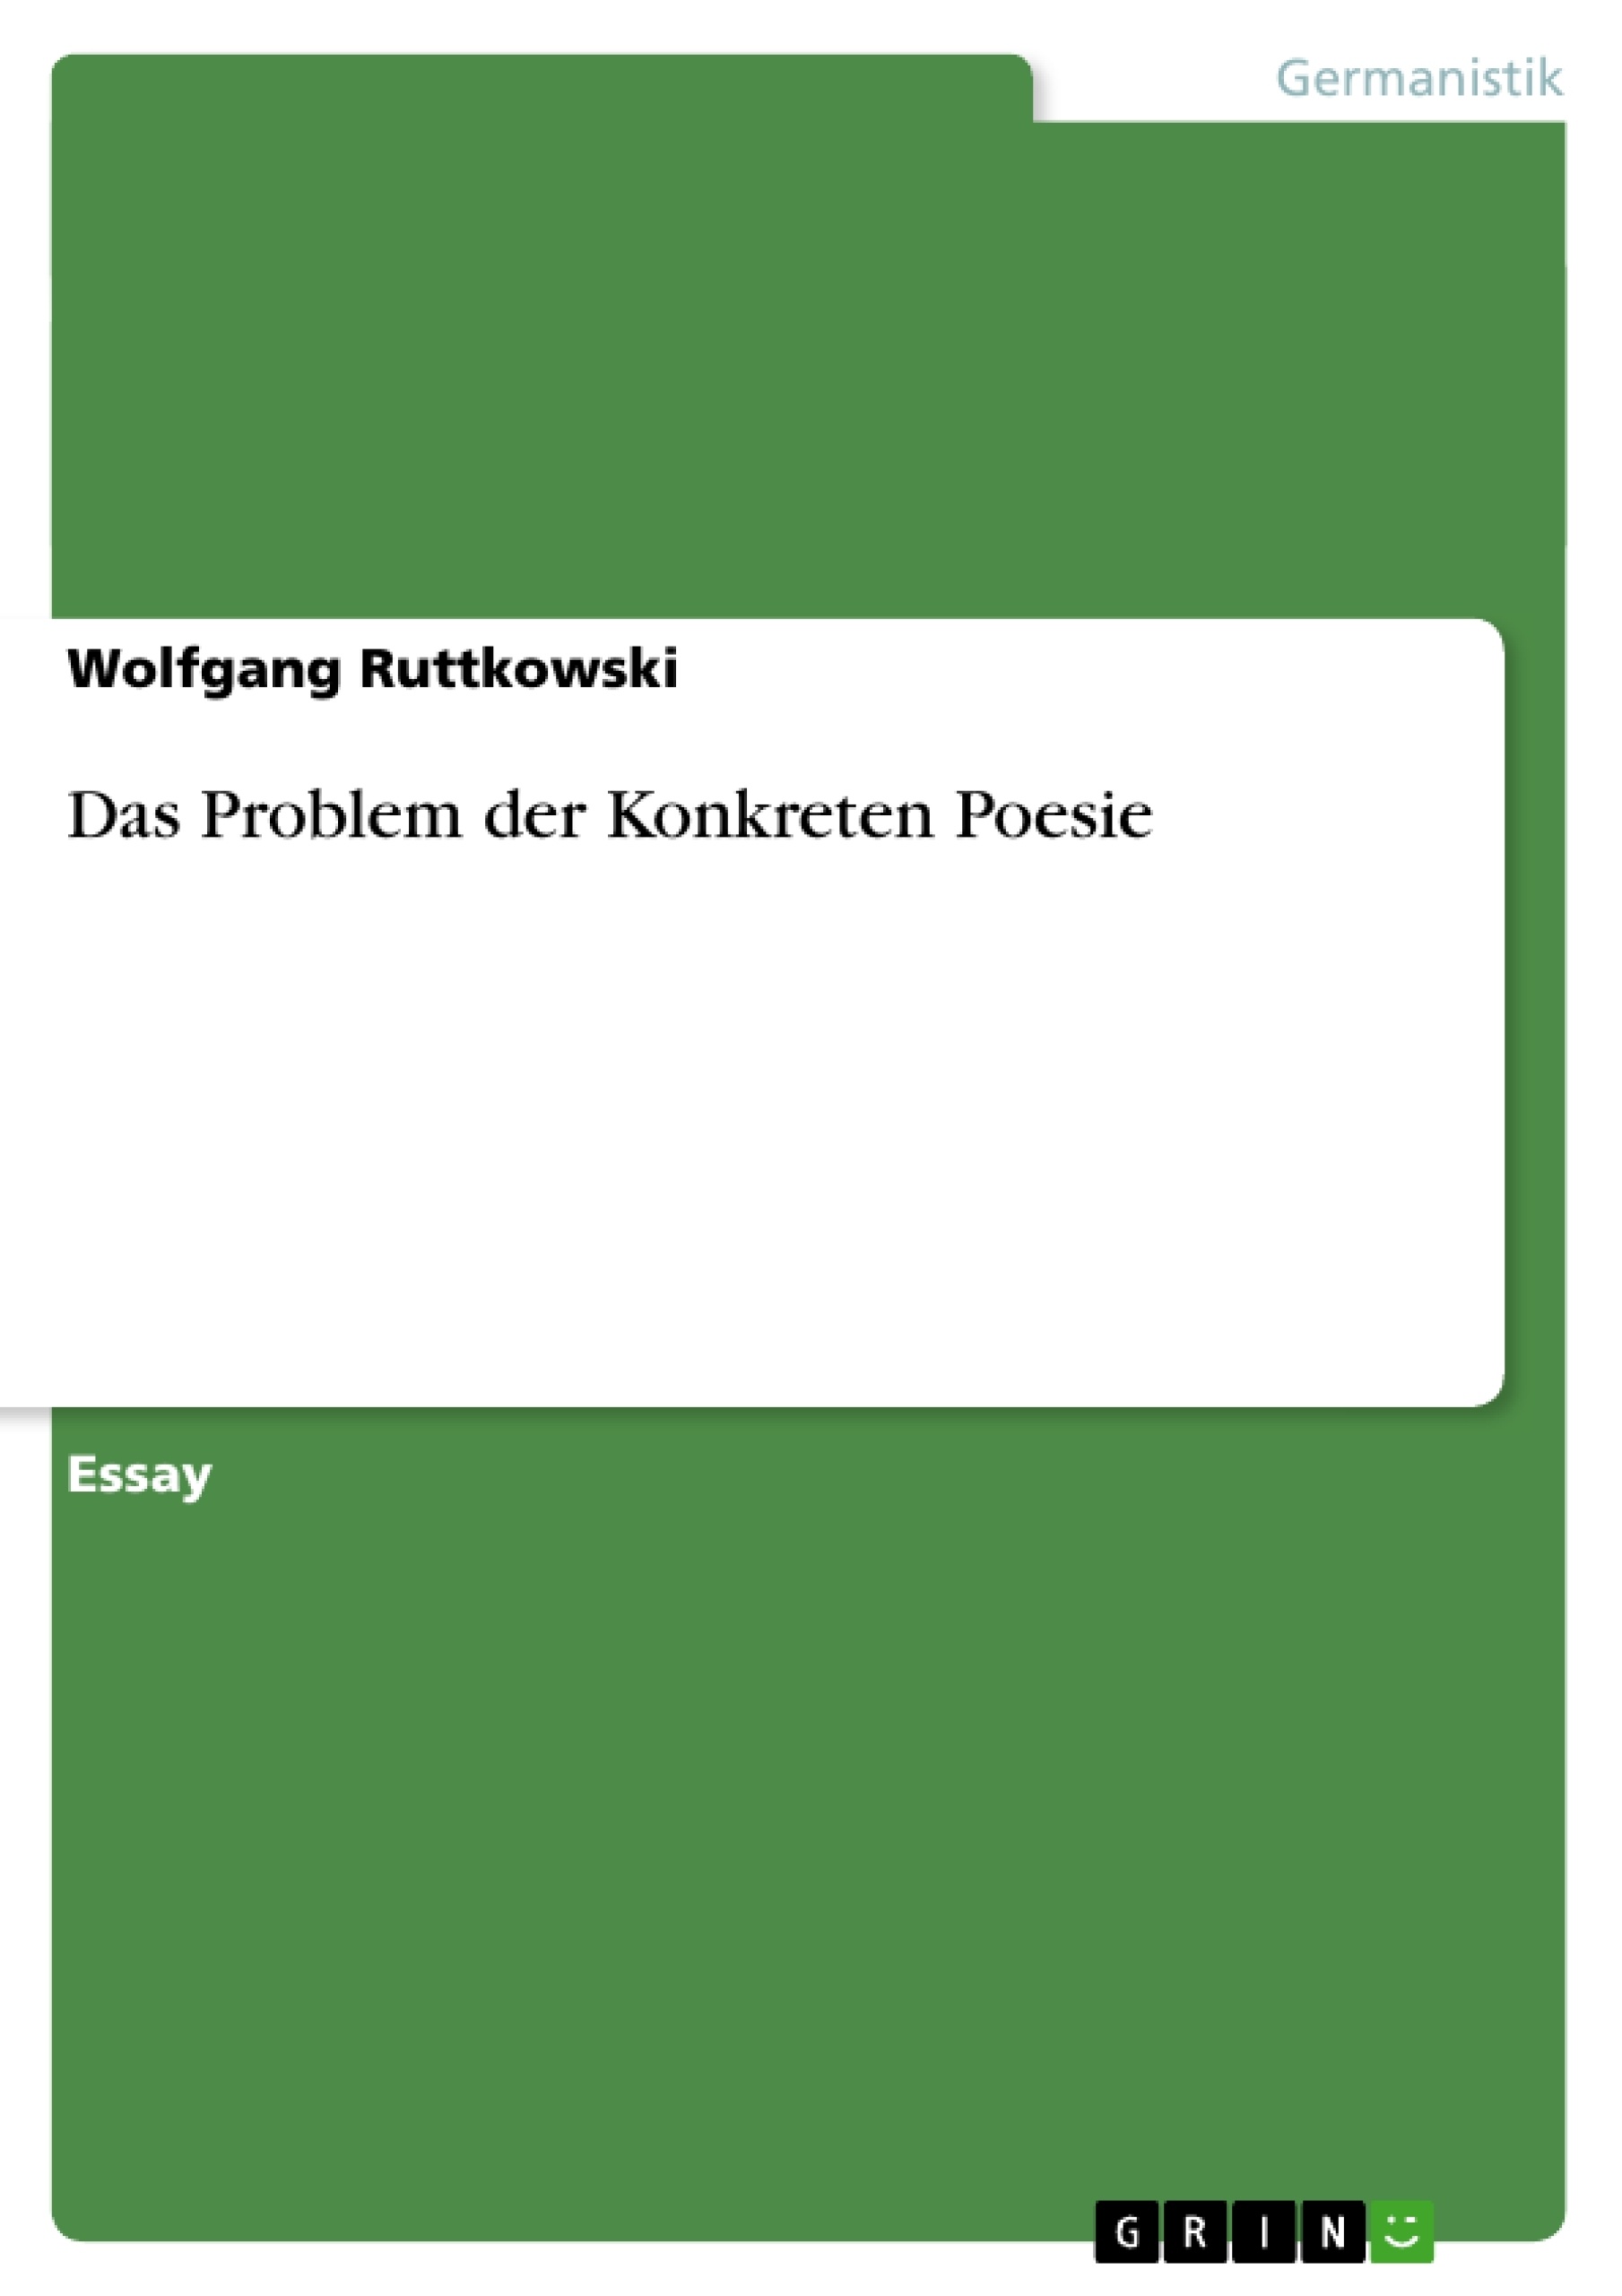 Titre: Das Problem der Konkreten Poesie